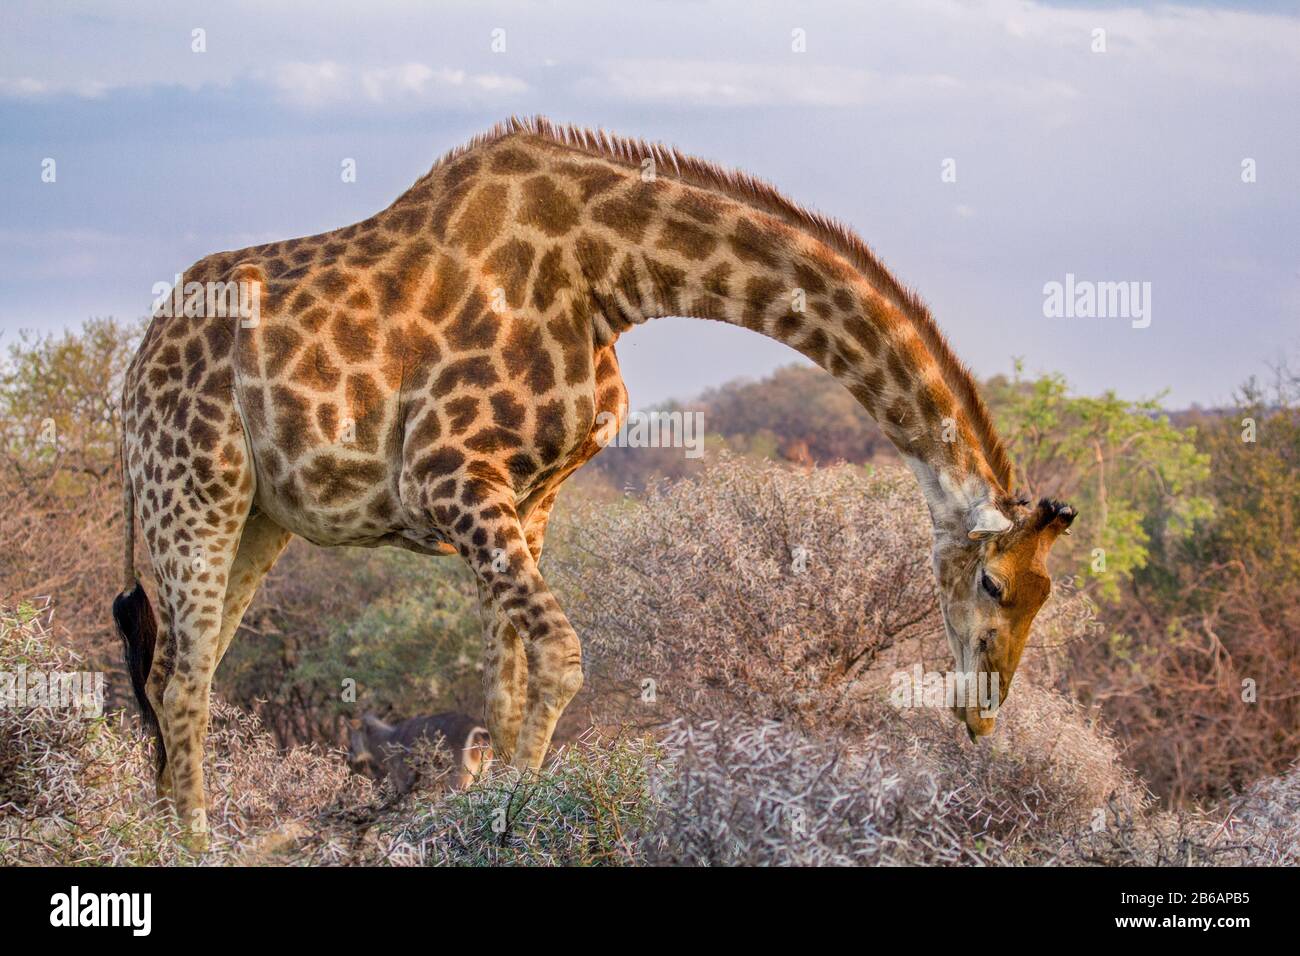 A Giraffe (Giraffa Camelopardalis) bending over to graze on a shrub in Dikhololo Game Reserve, South Africa Stock Photo